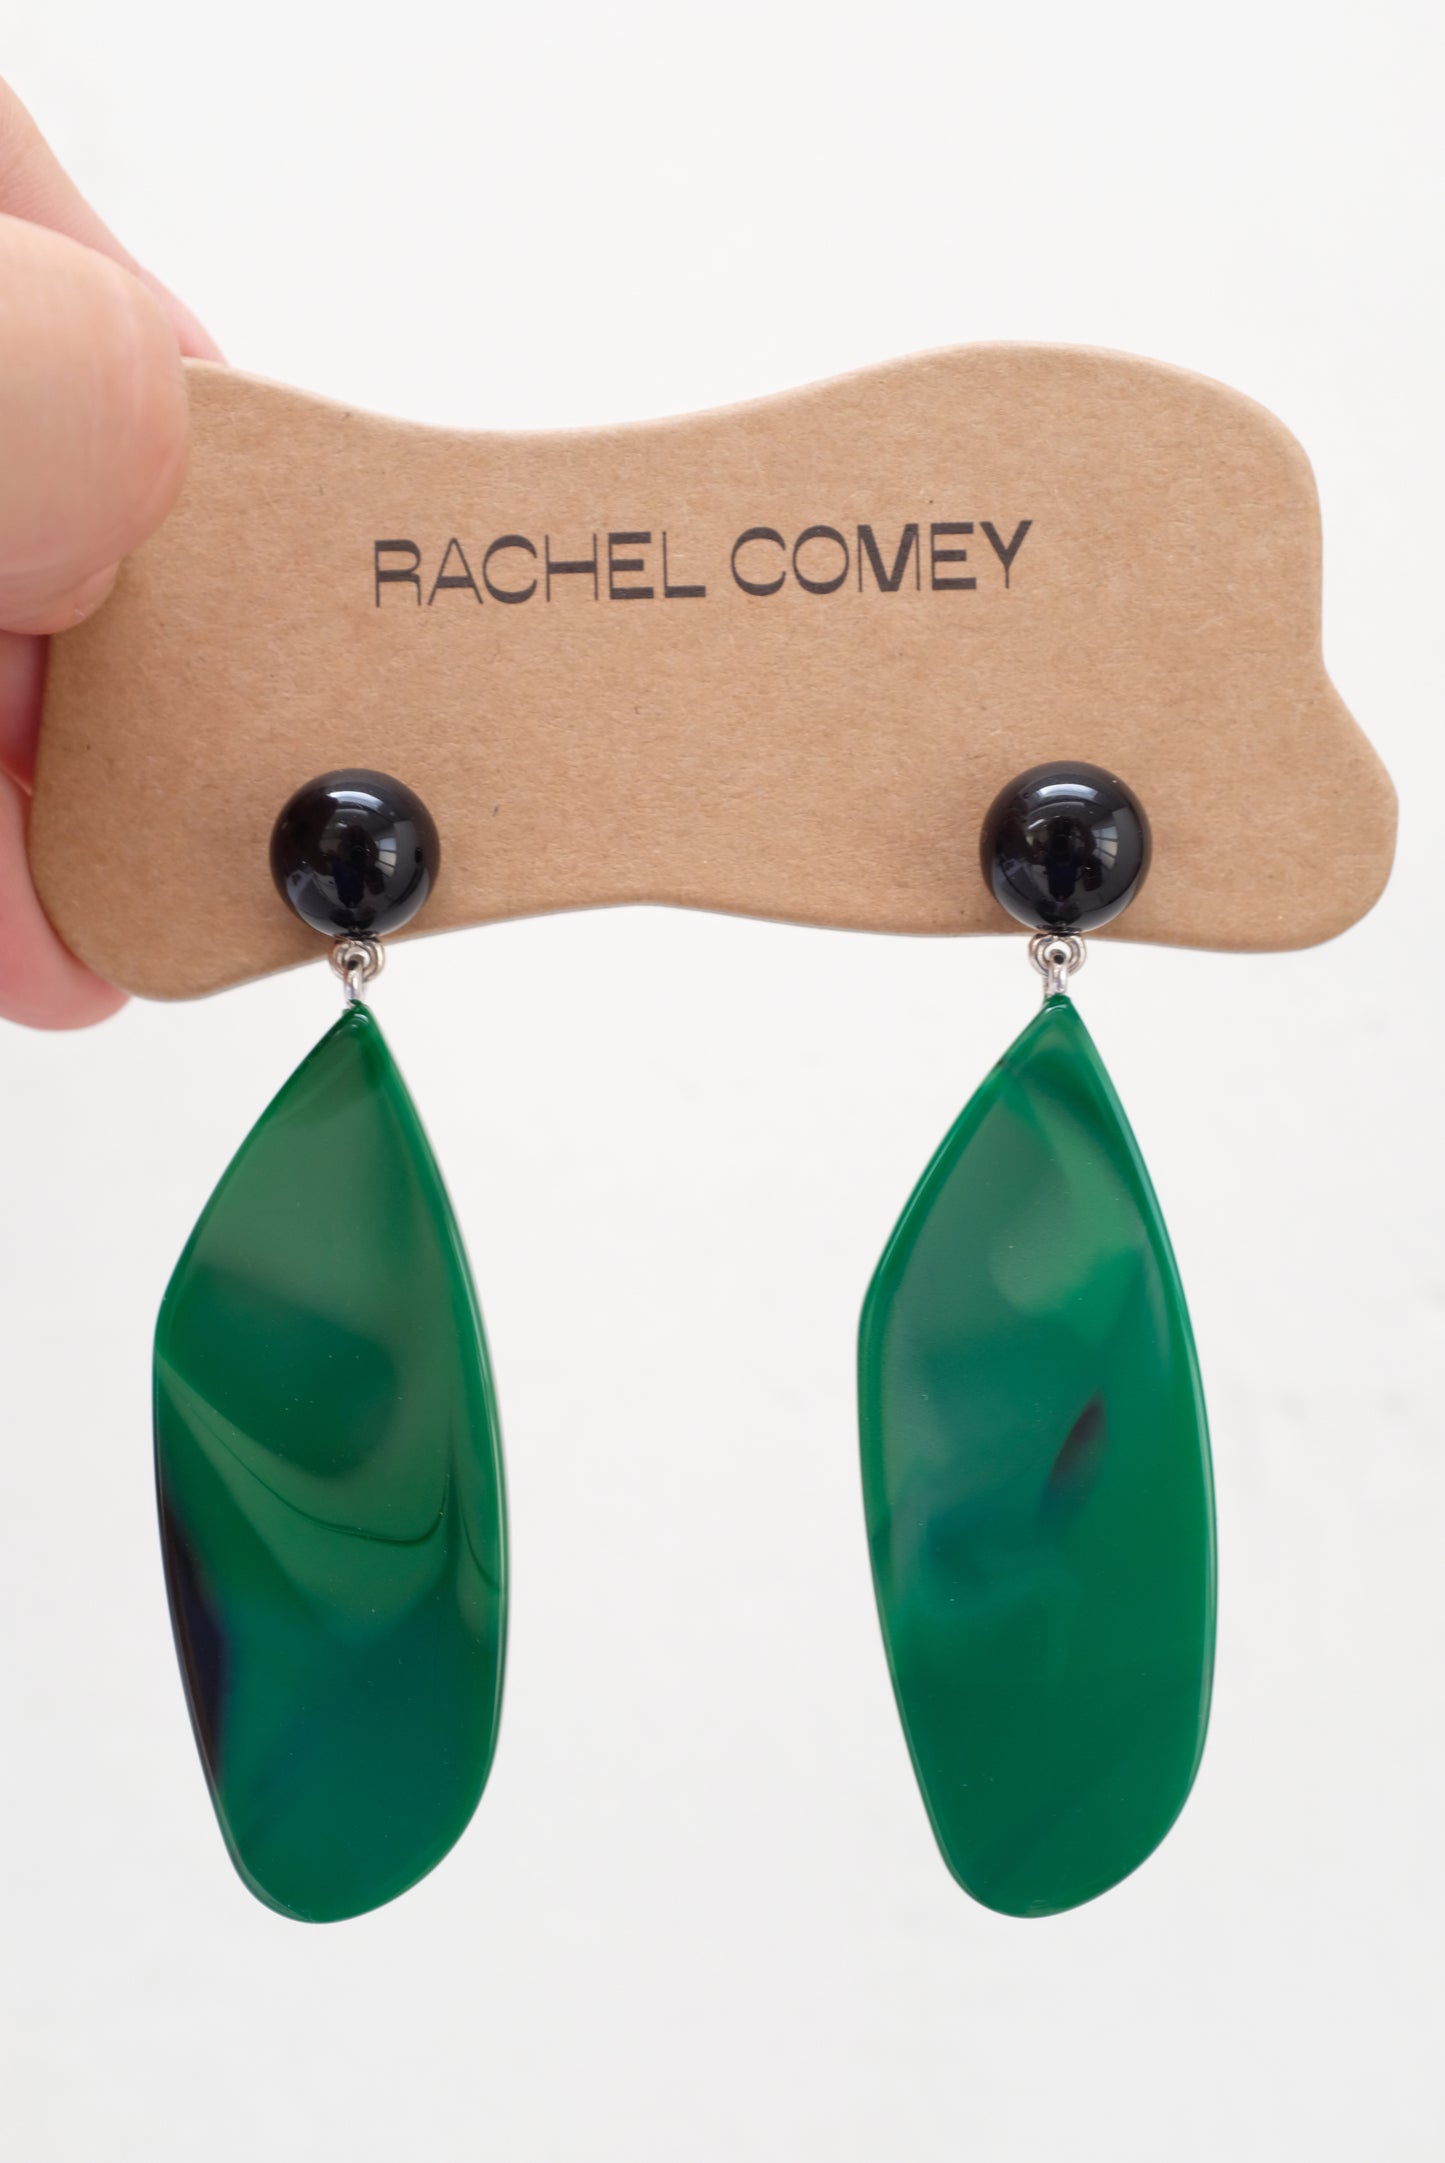 Rachel Comey Splitleap Earrings